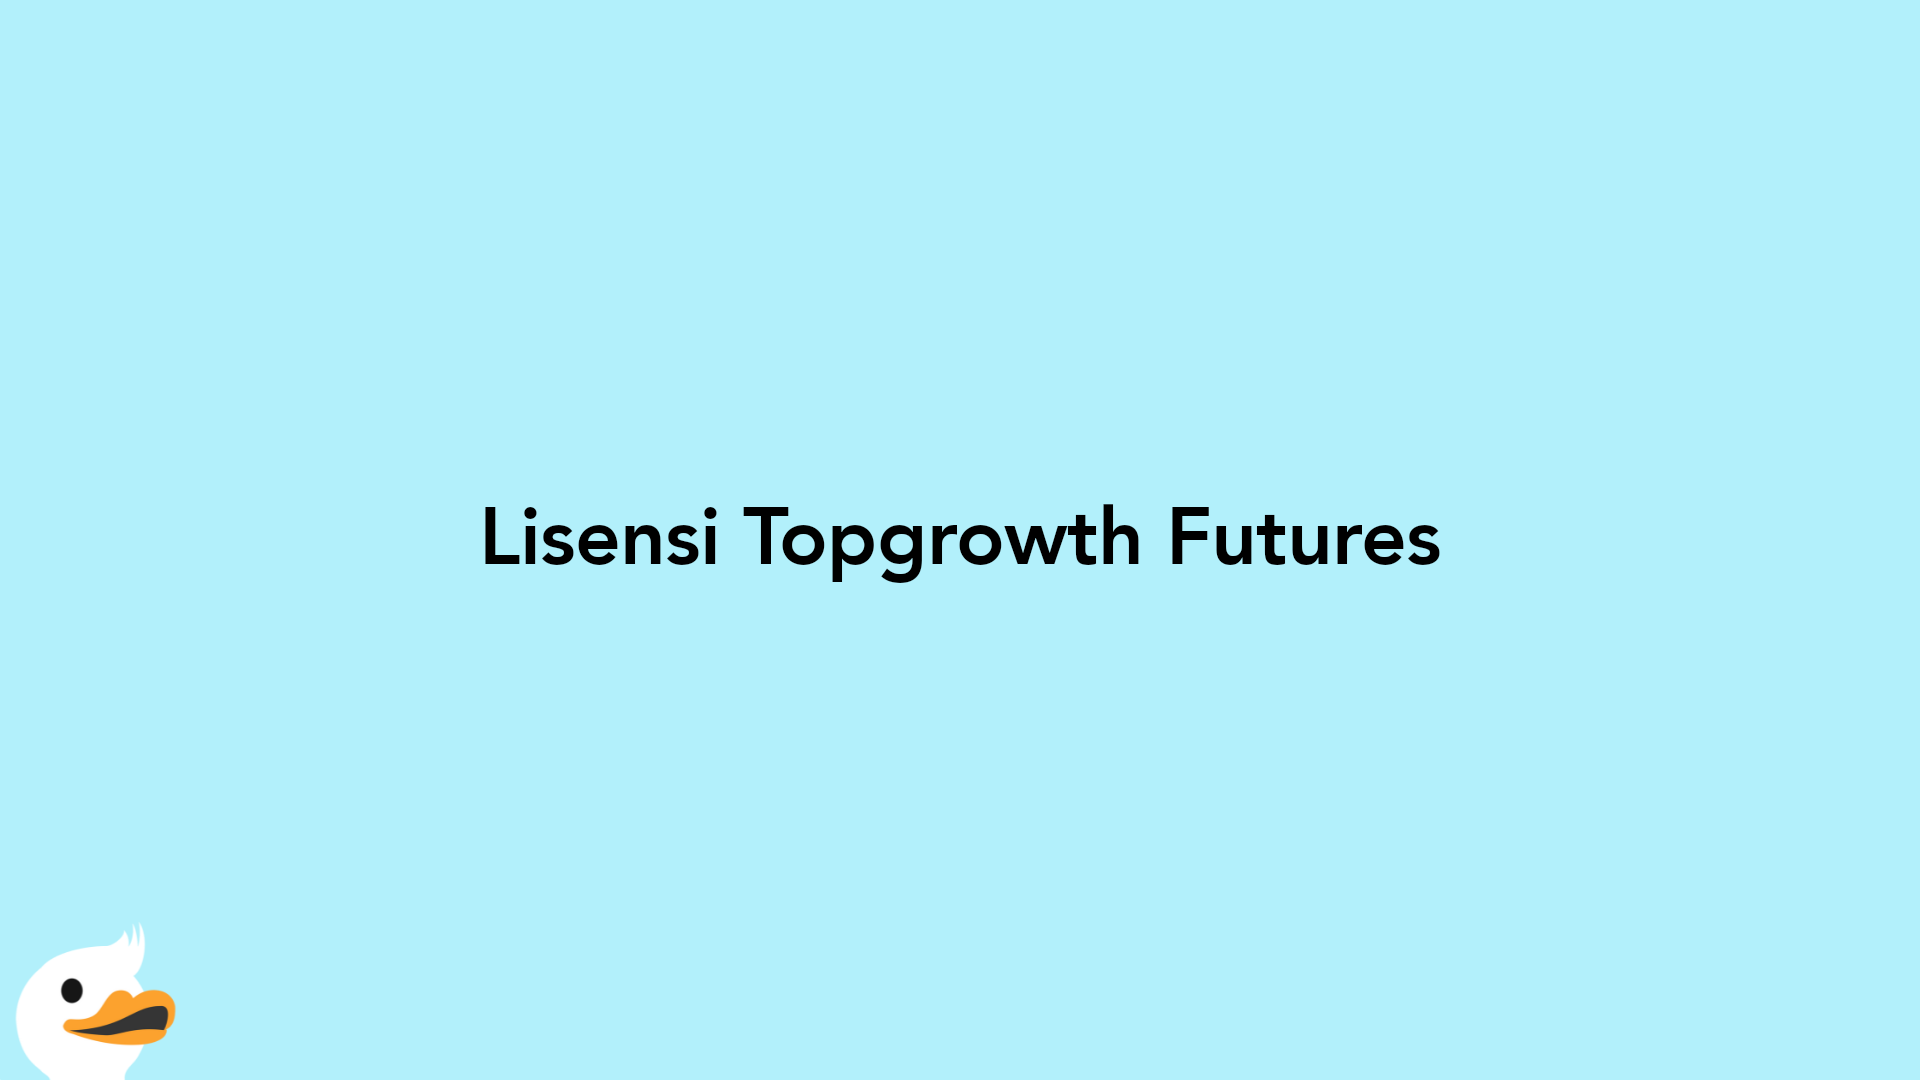 Lisensi Topgrowth Futures